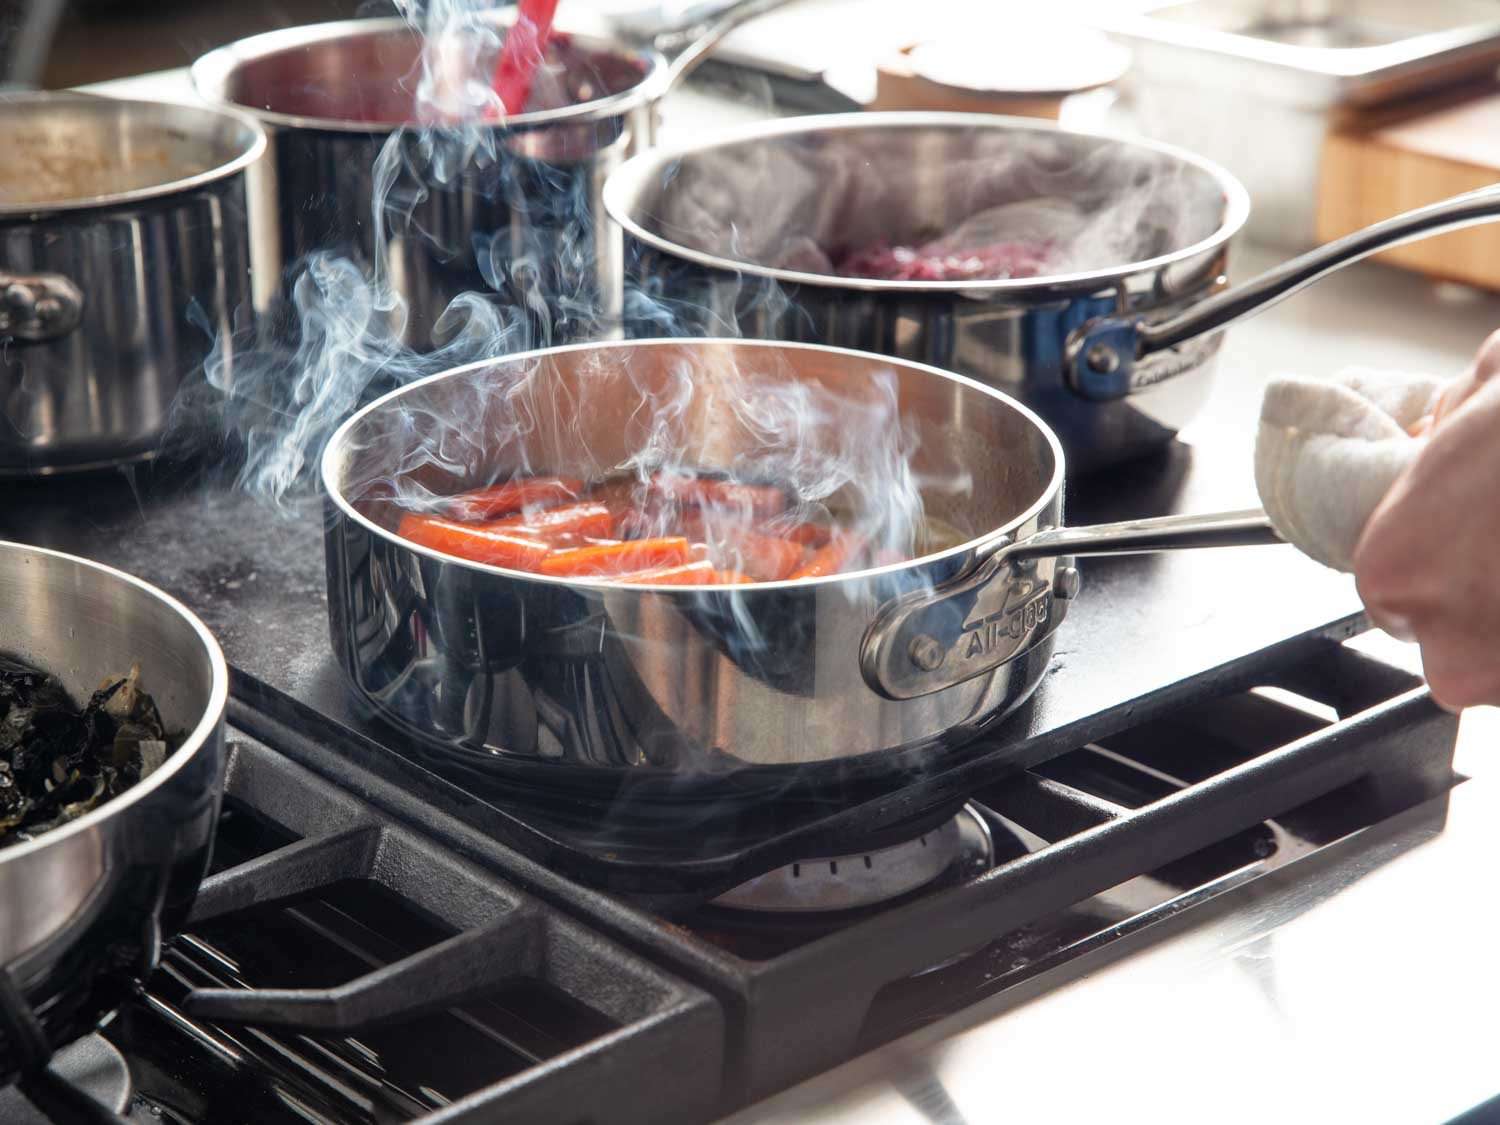 烹饪釉面胡萝卜炖锅中烤钢在煤气灶上,与其他平底锅的食物变暖在同一时间。